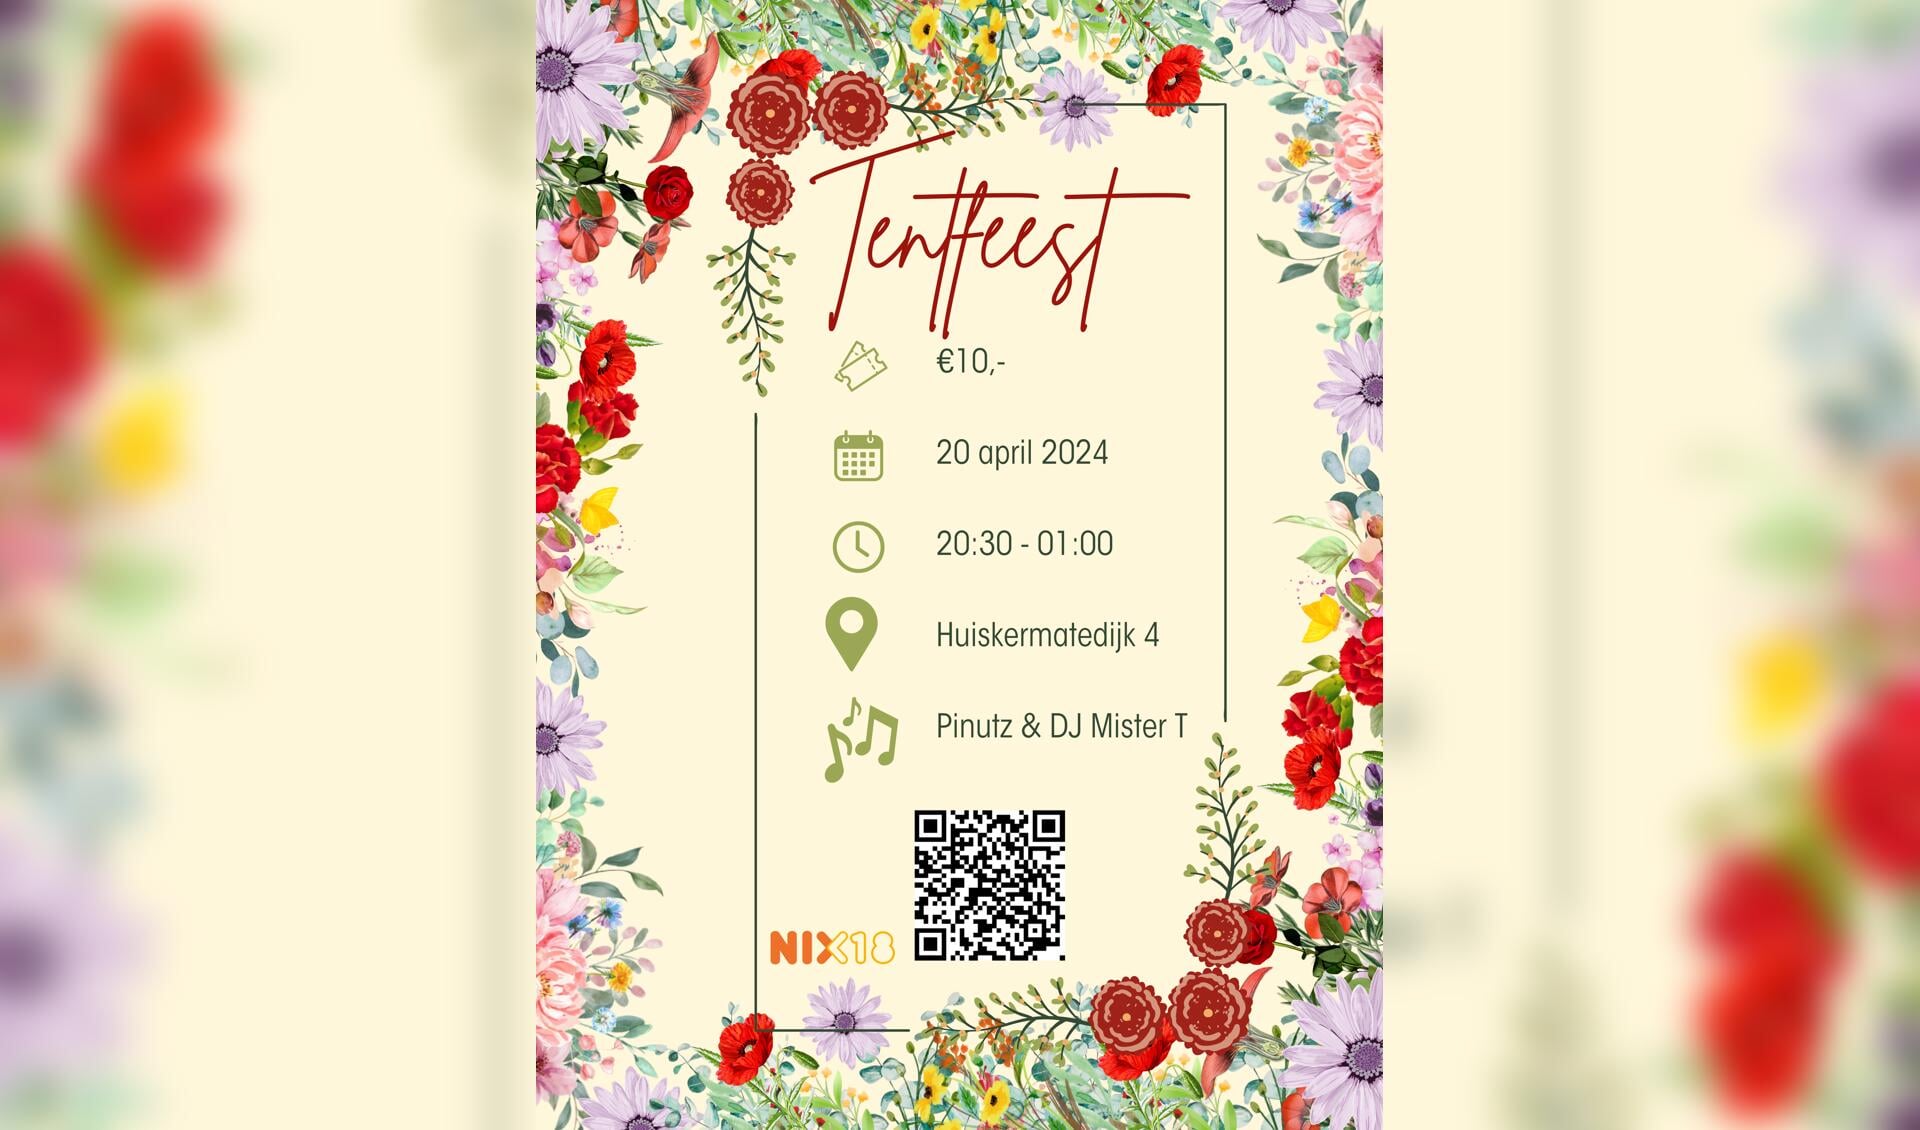 Poster van het Tentfeest met QR code om kaarten online te bestellen. 